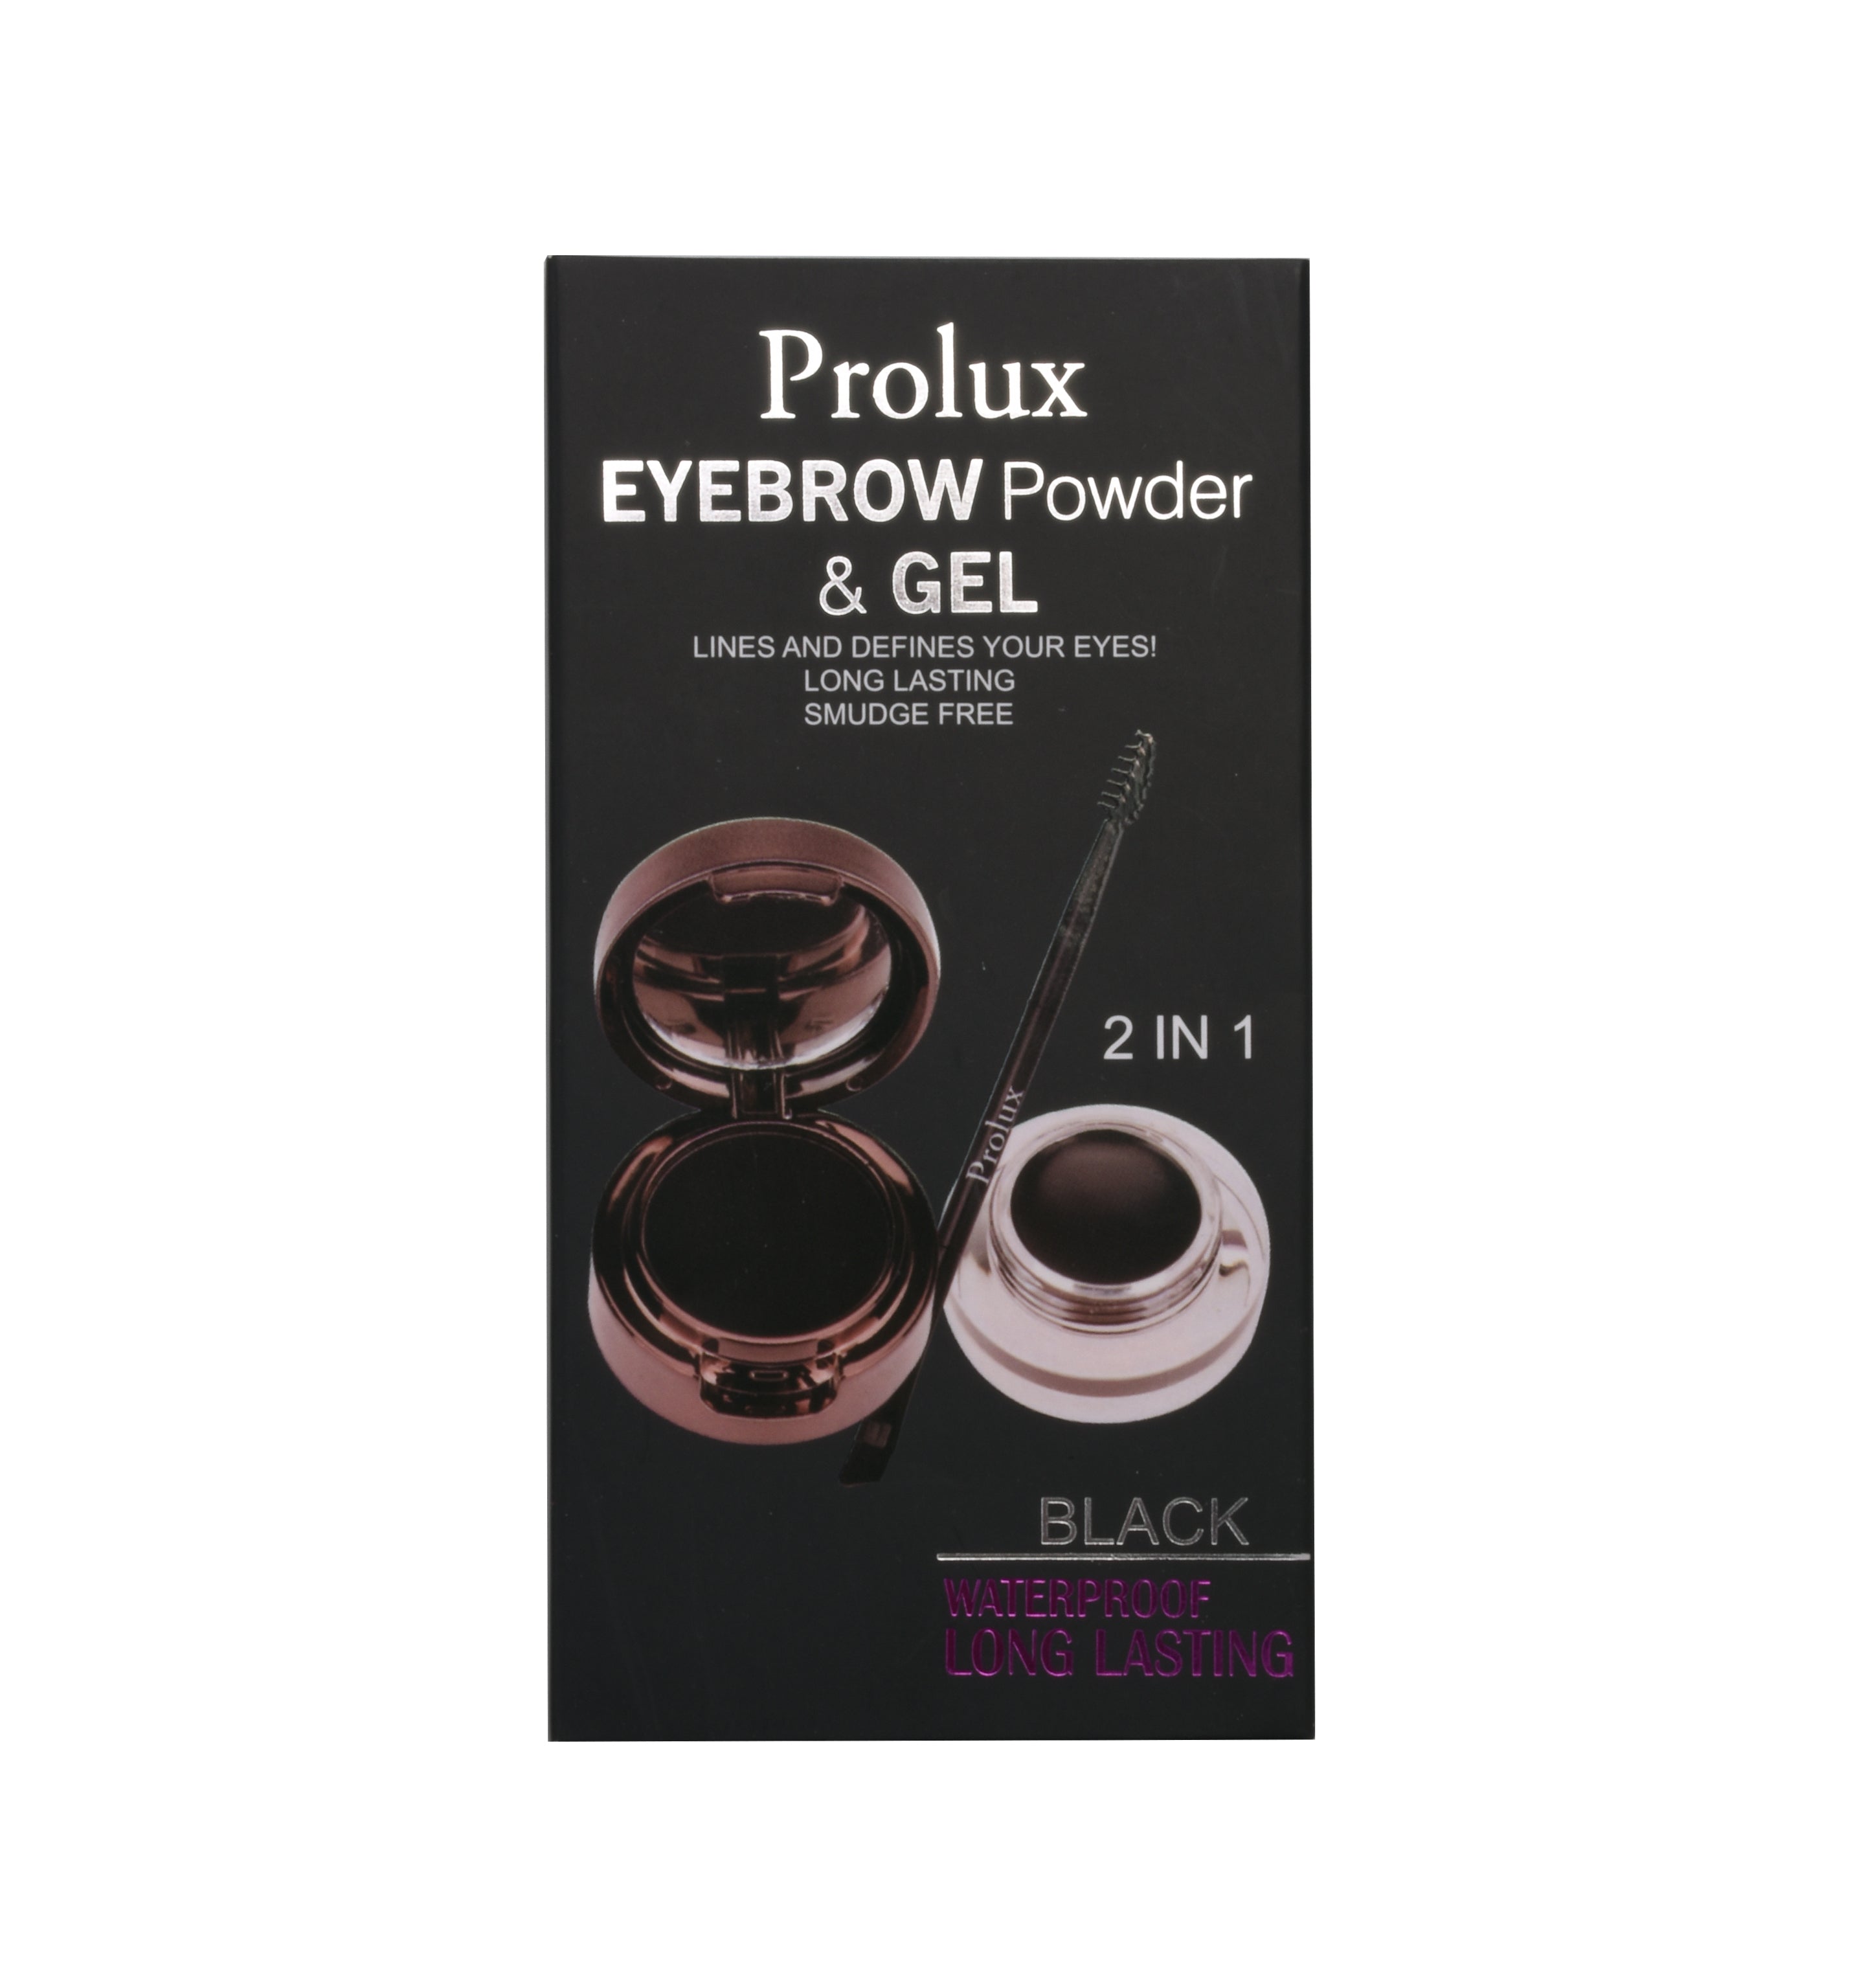 Eyebrow Powder & Gel